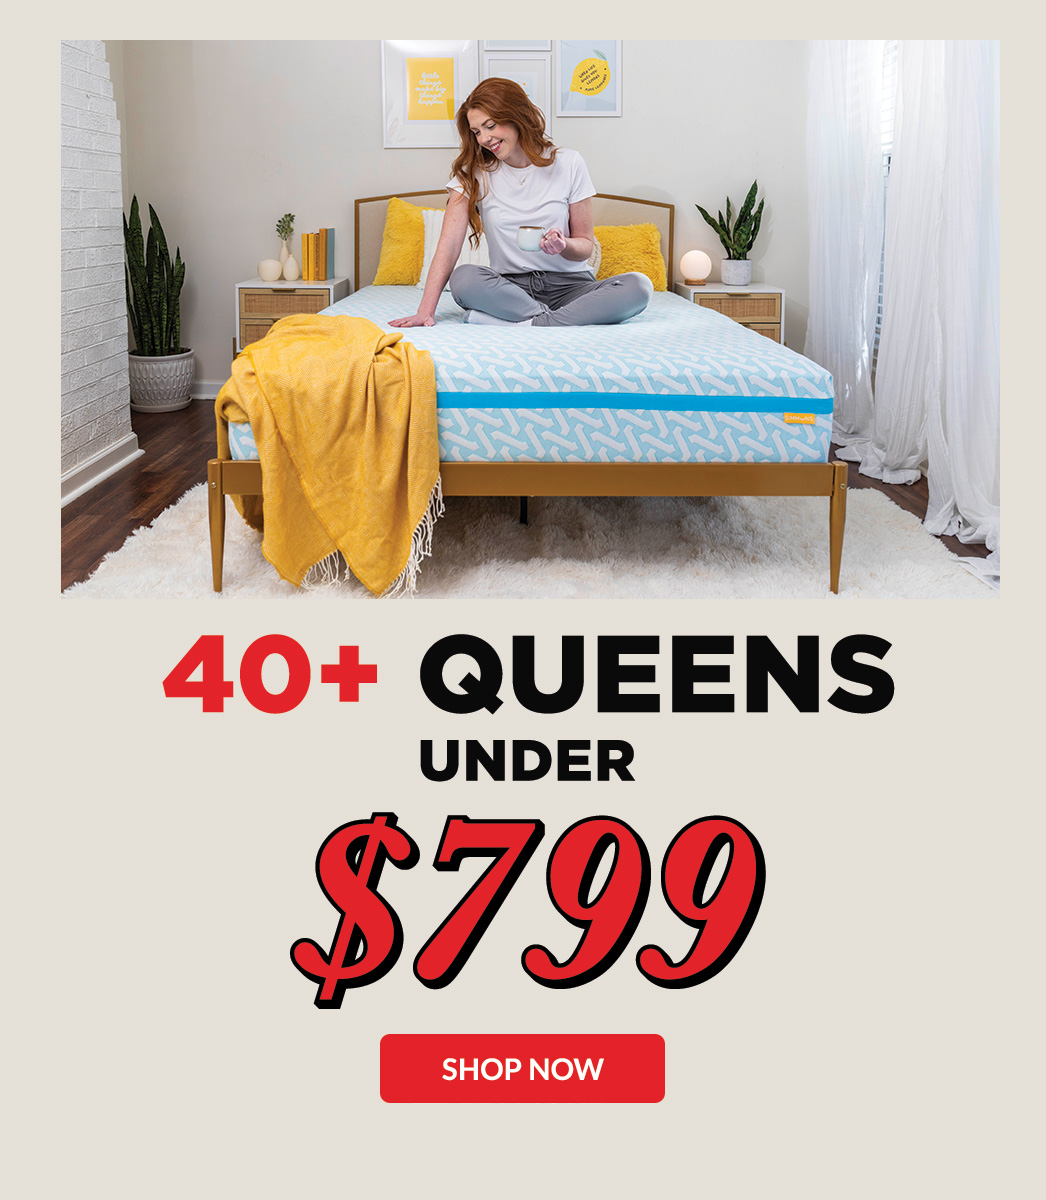 Over 40 Queens under $799